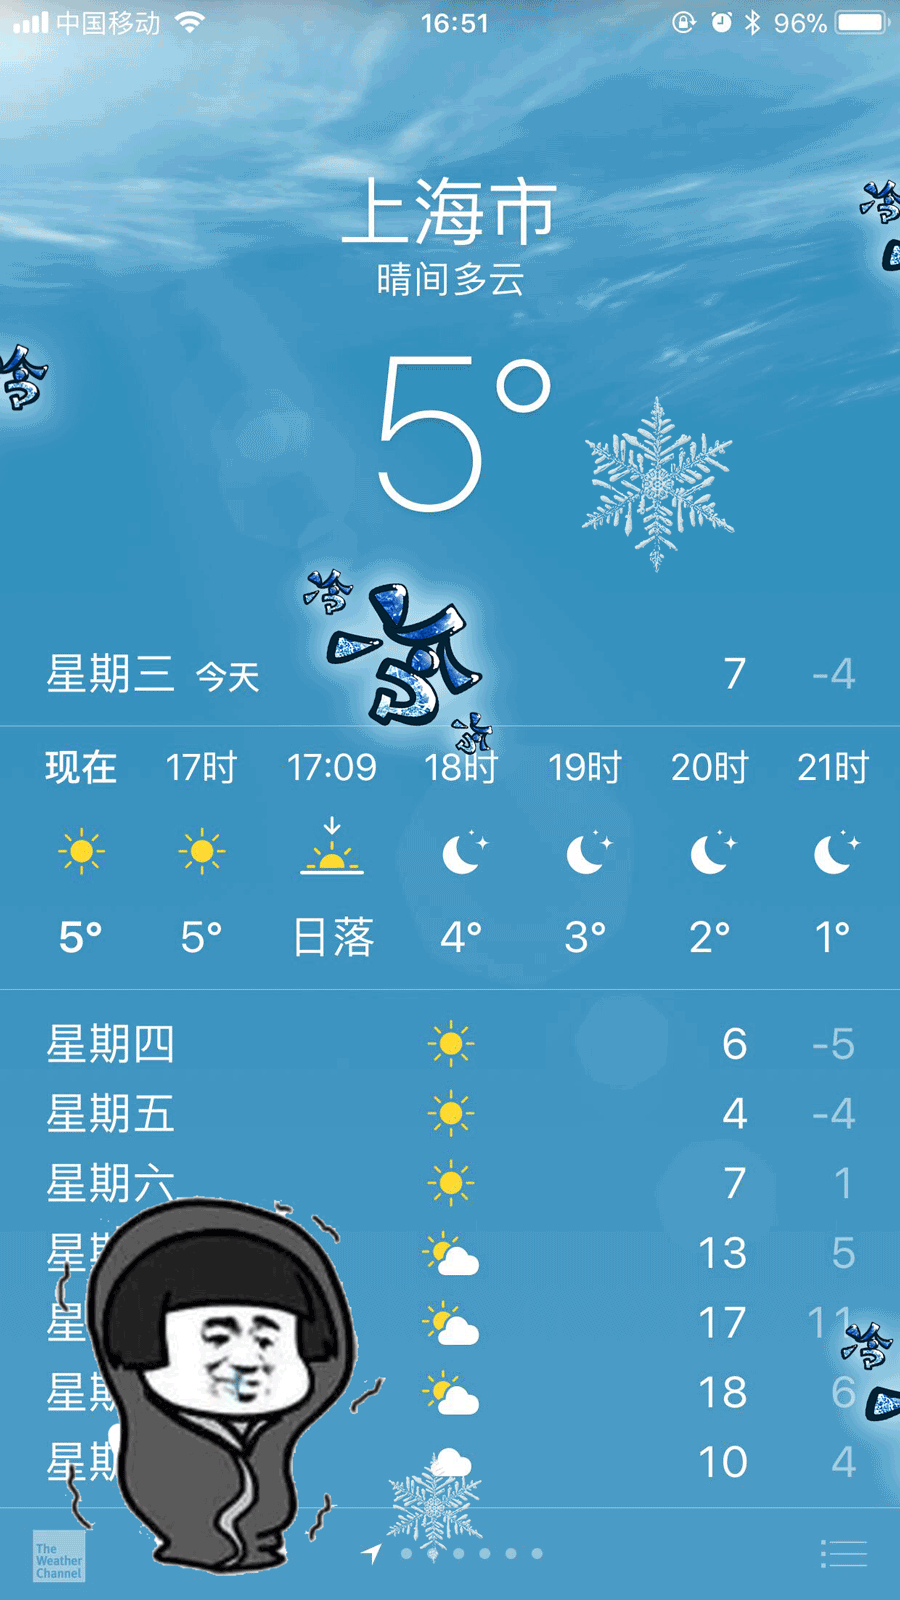 上海天气预报 今天图片